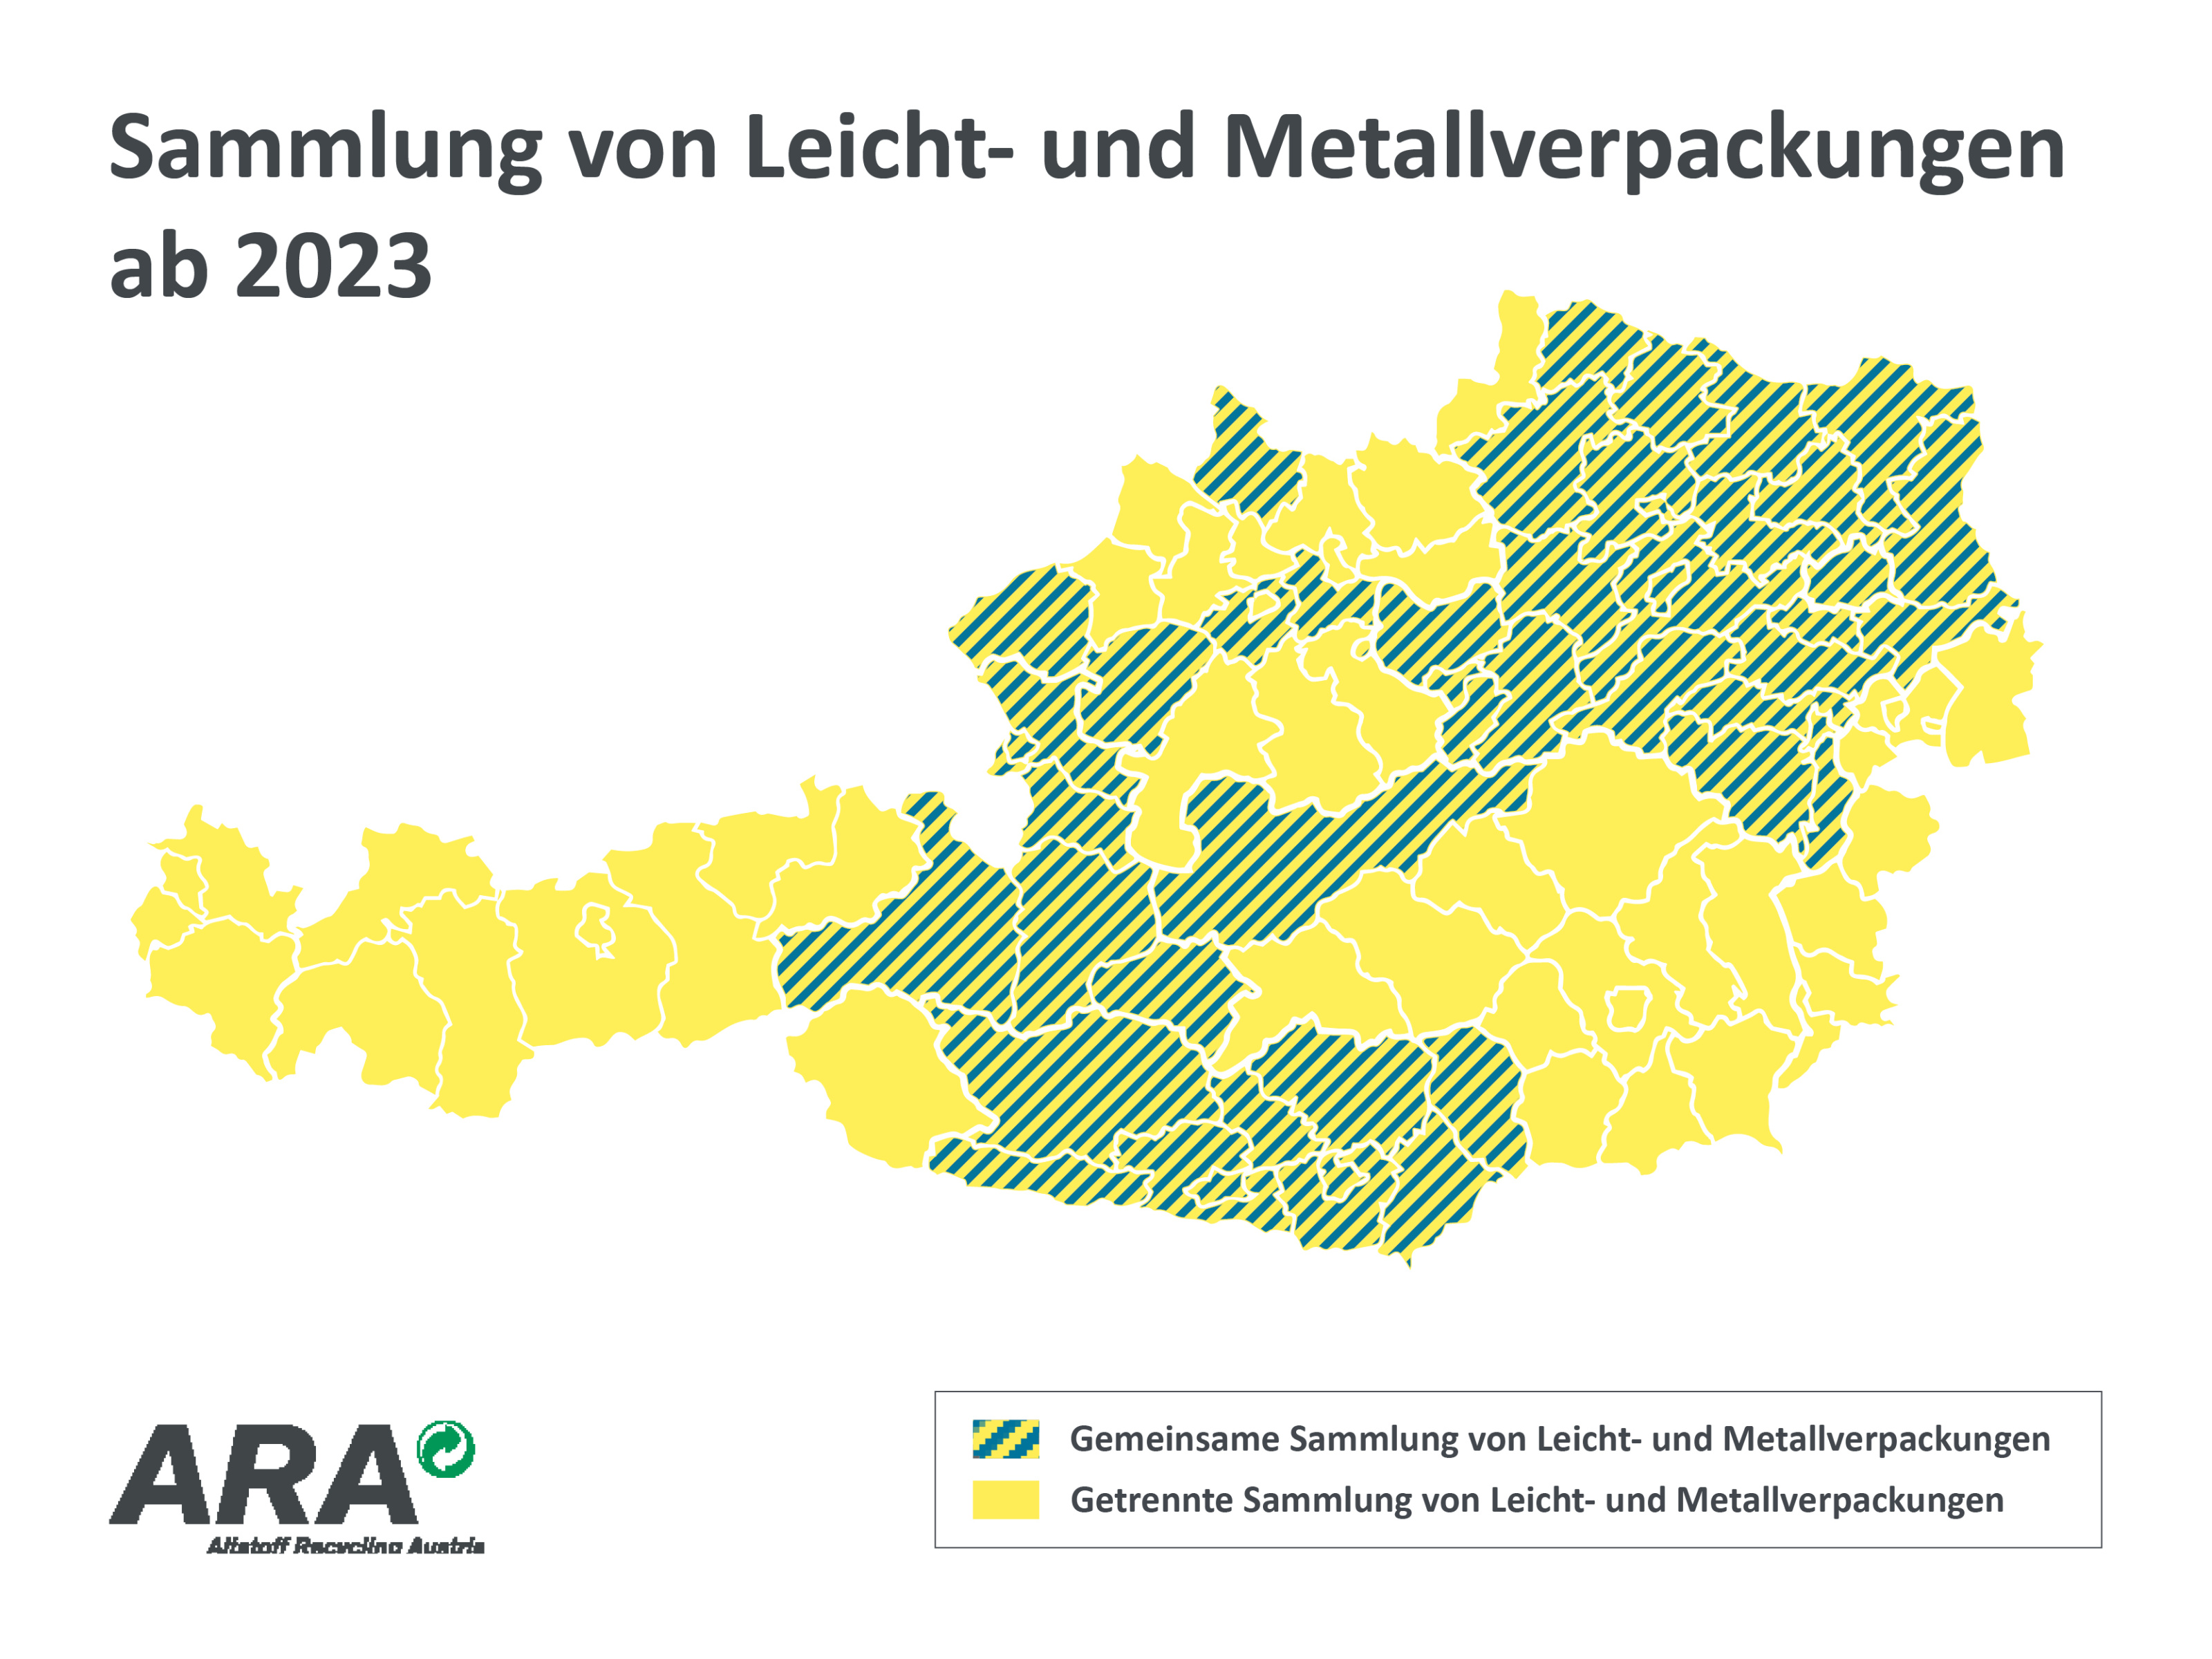 Sammlung von Leicht- und Metallverpackungen ab 2023 in Österreich.